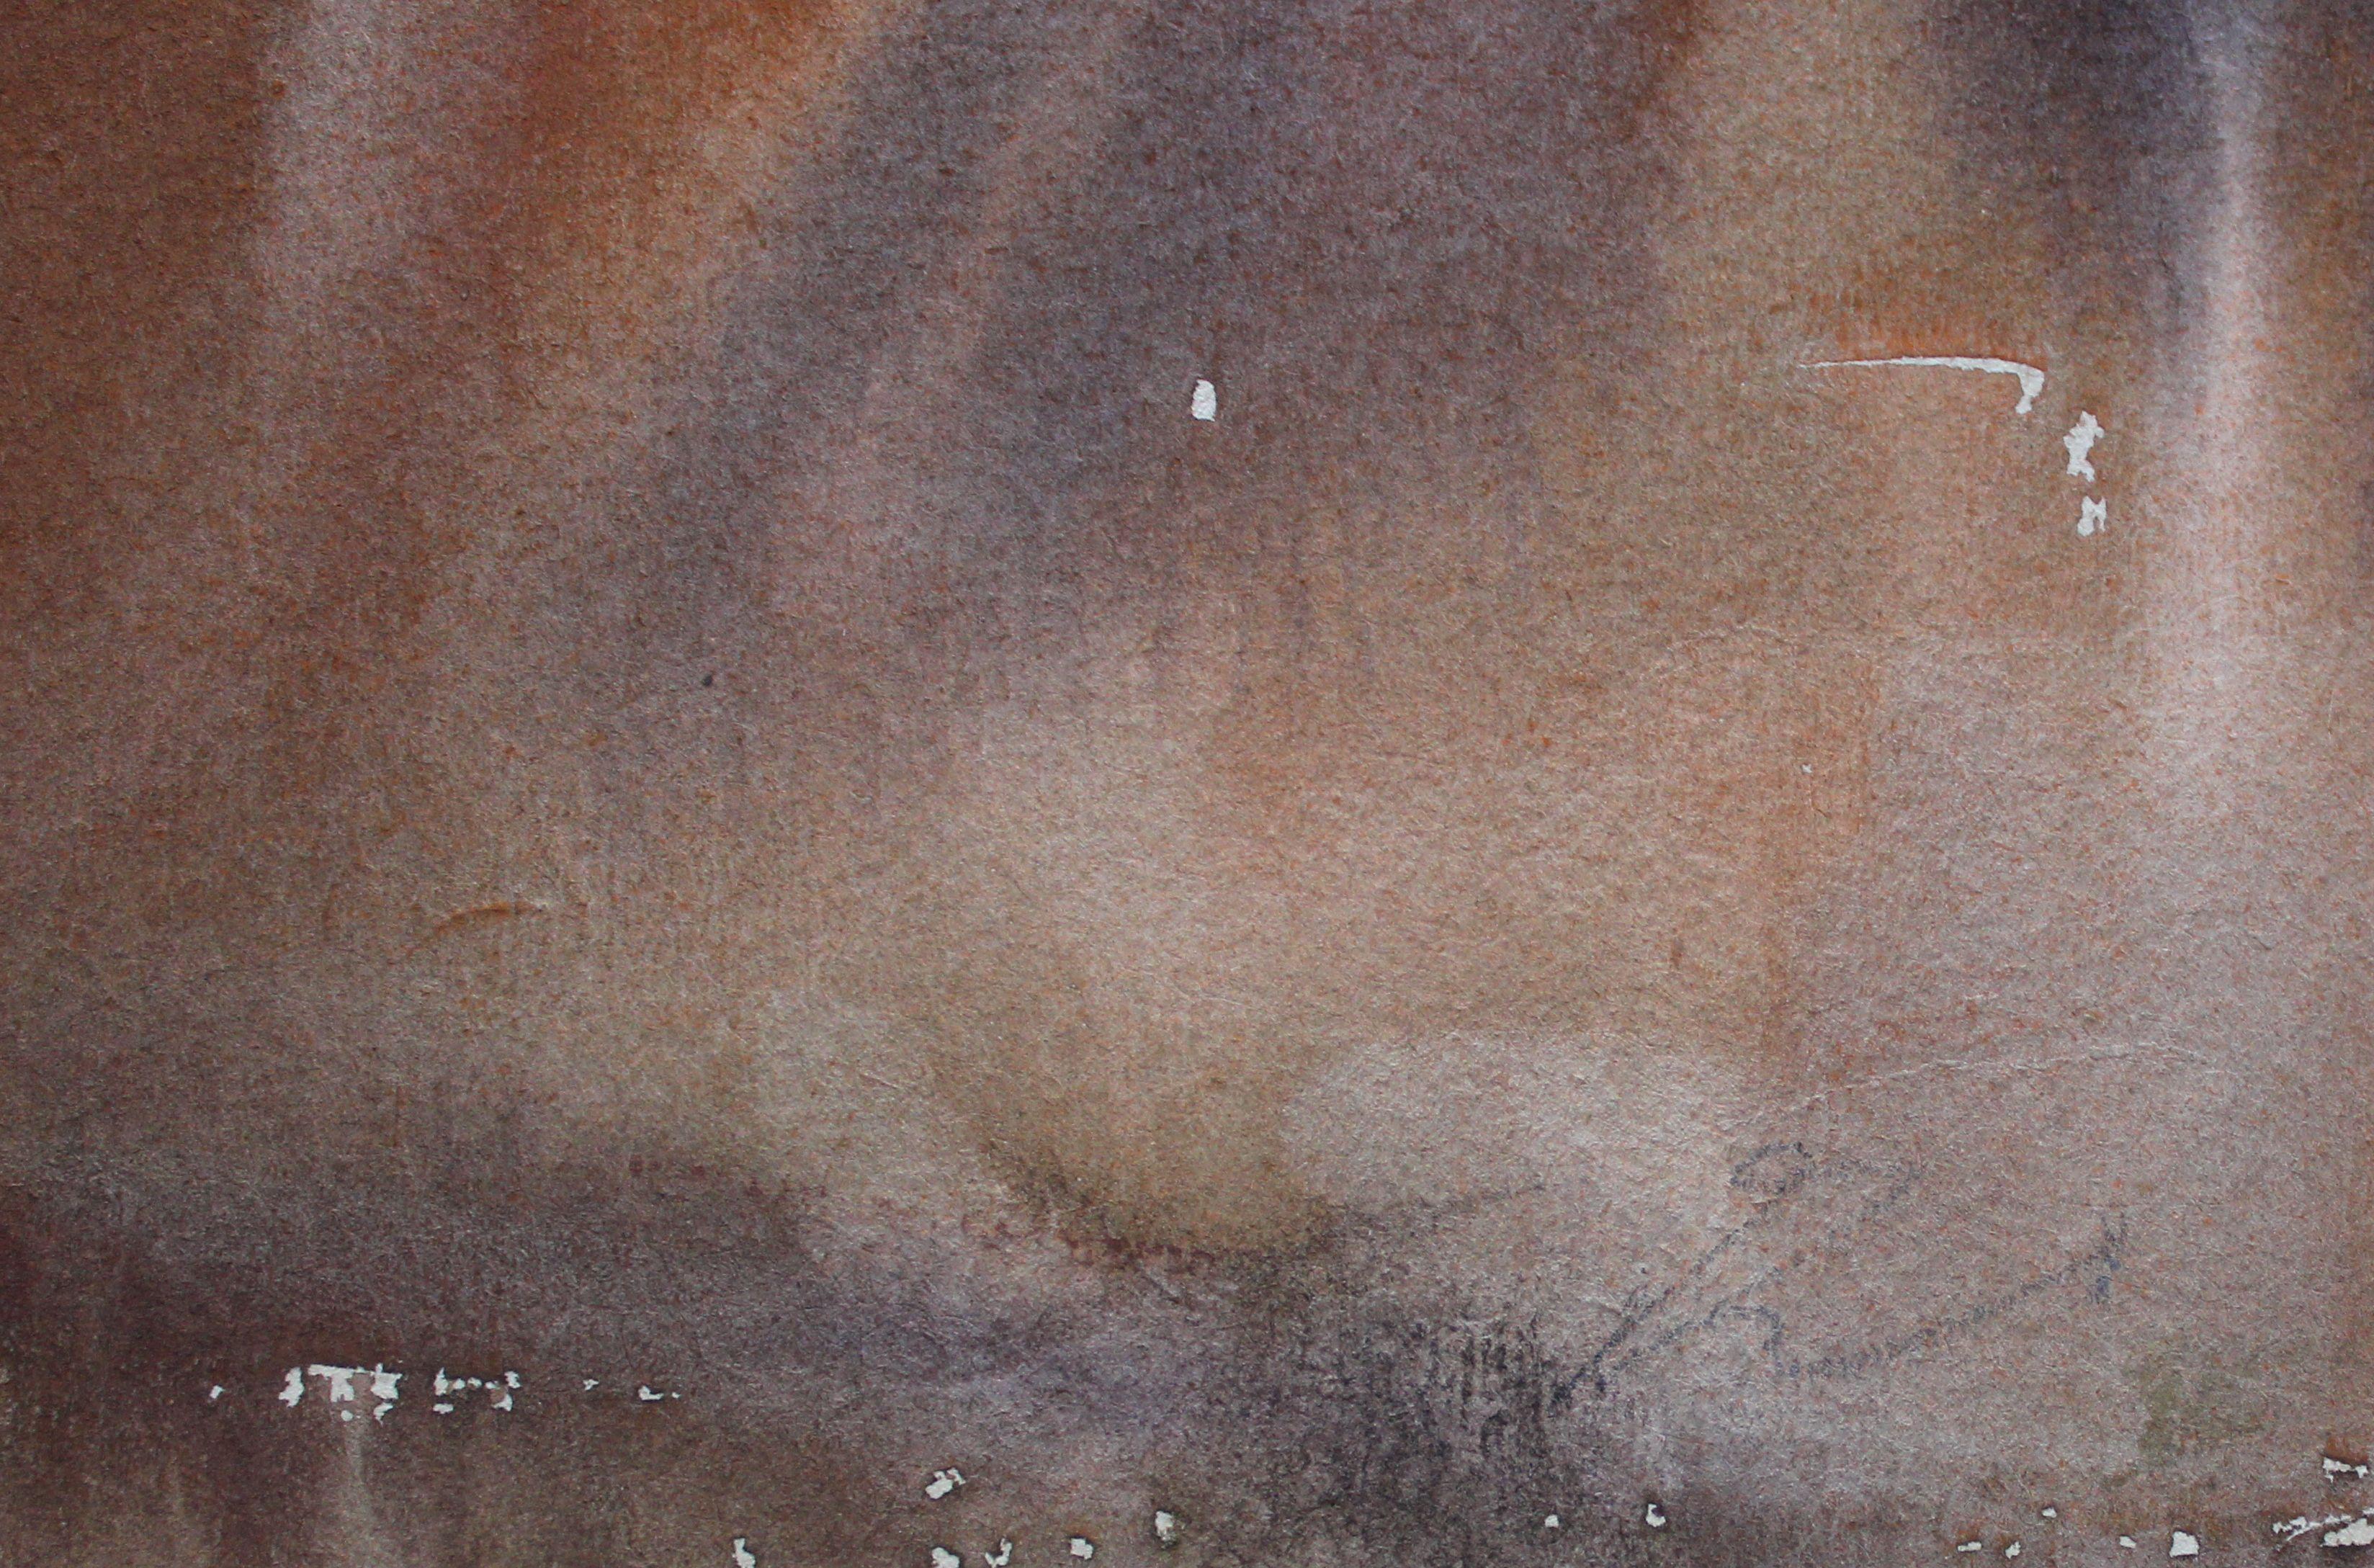 Heuhaufen. 1960s. Zweiseitig. Papier, Aquarell, 31x25 cm (Impressionismus), Art, von Dzidra Ezergaile